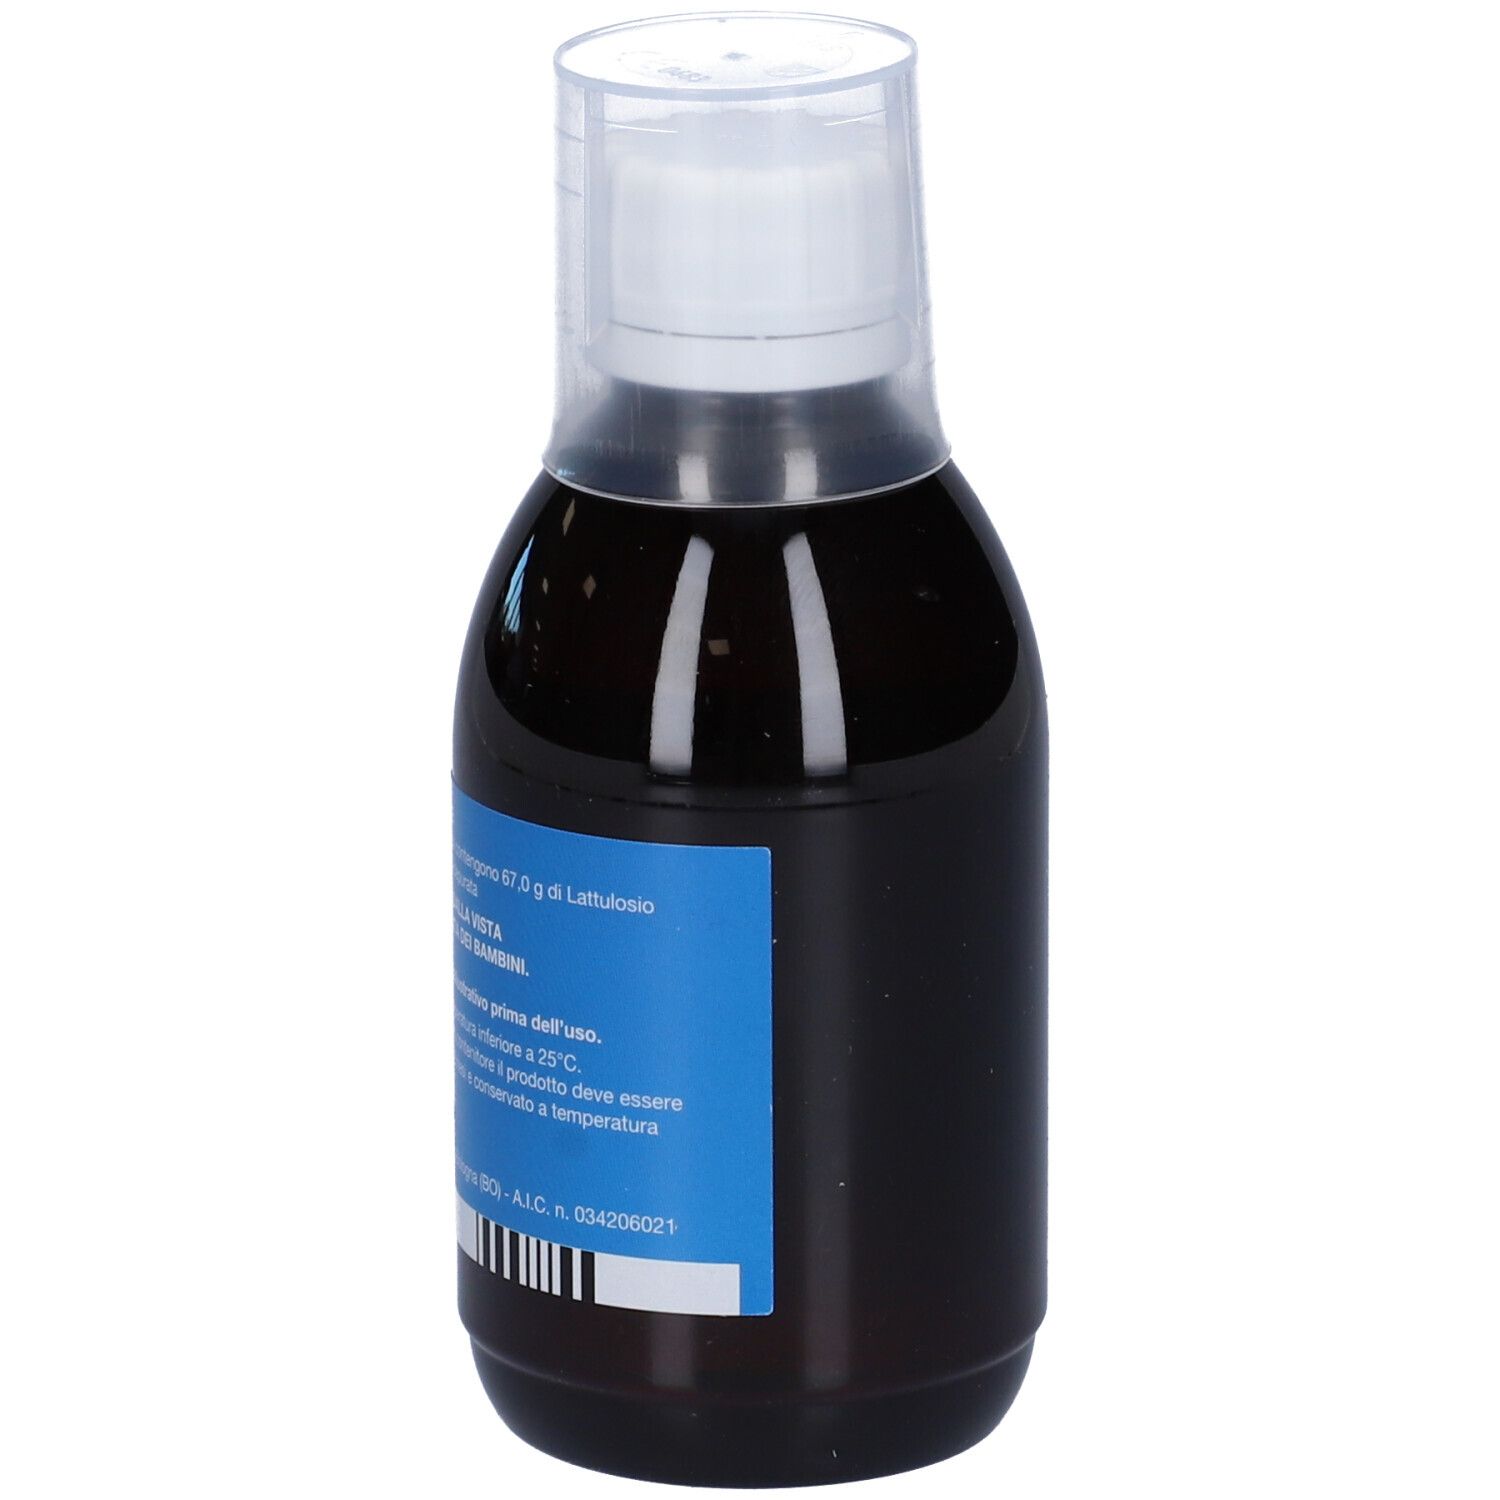 Lattulac® 67,0 g/100 ml Sciroppo